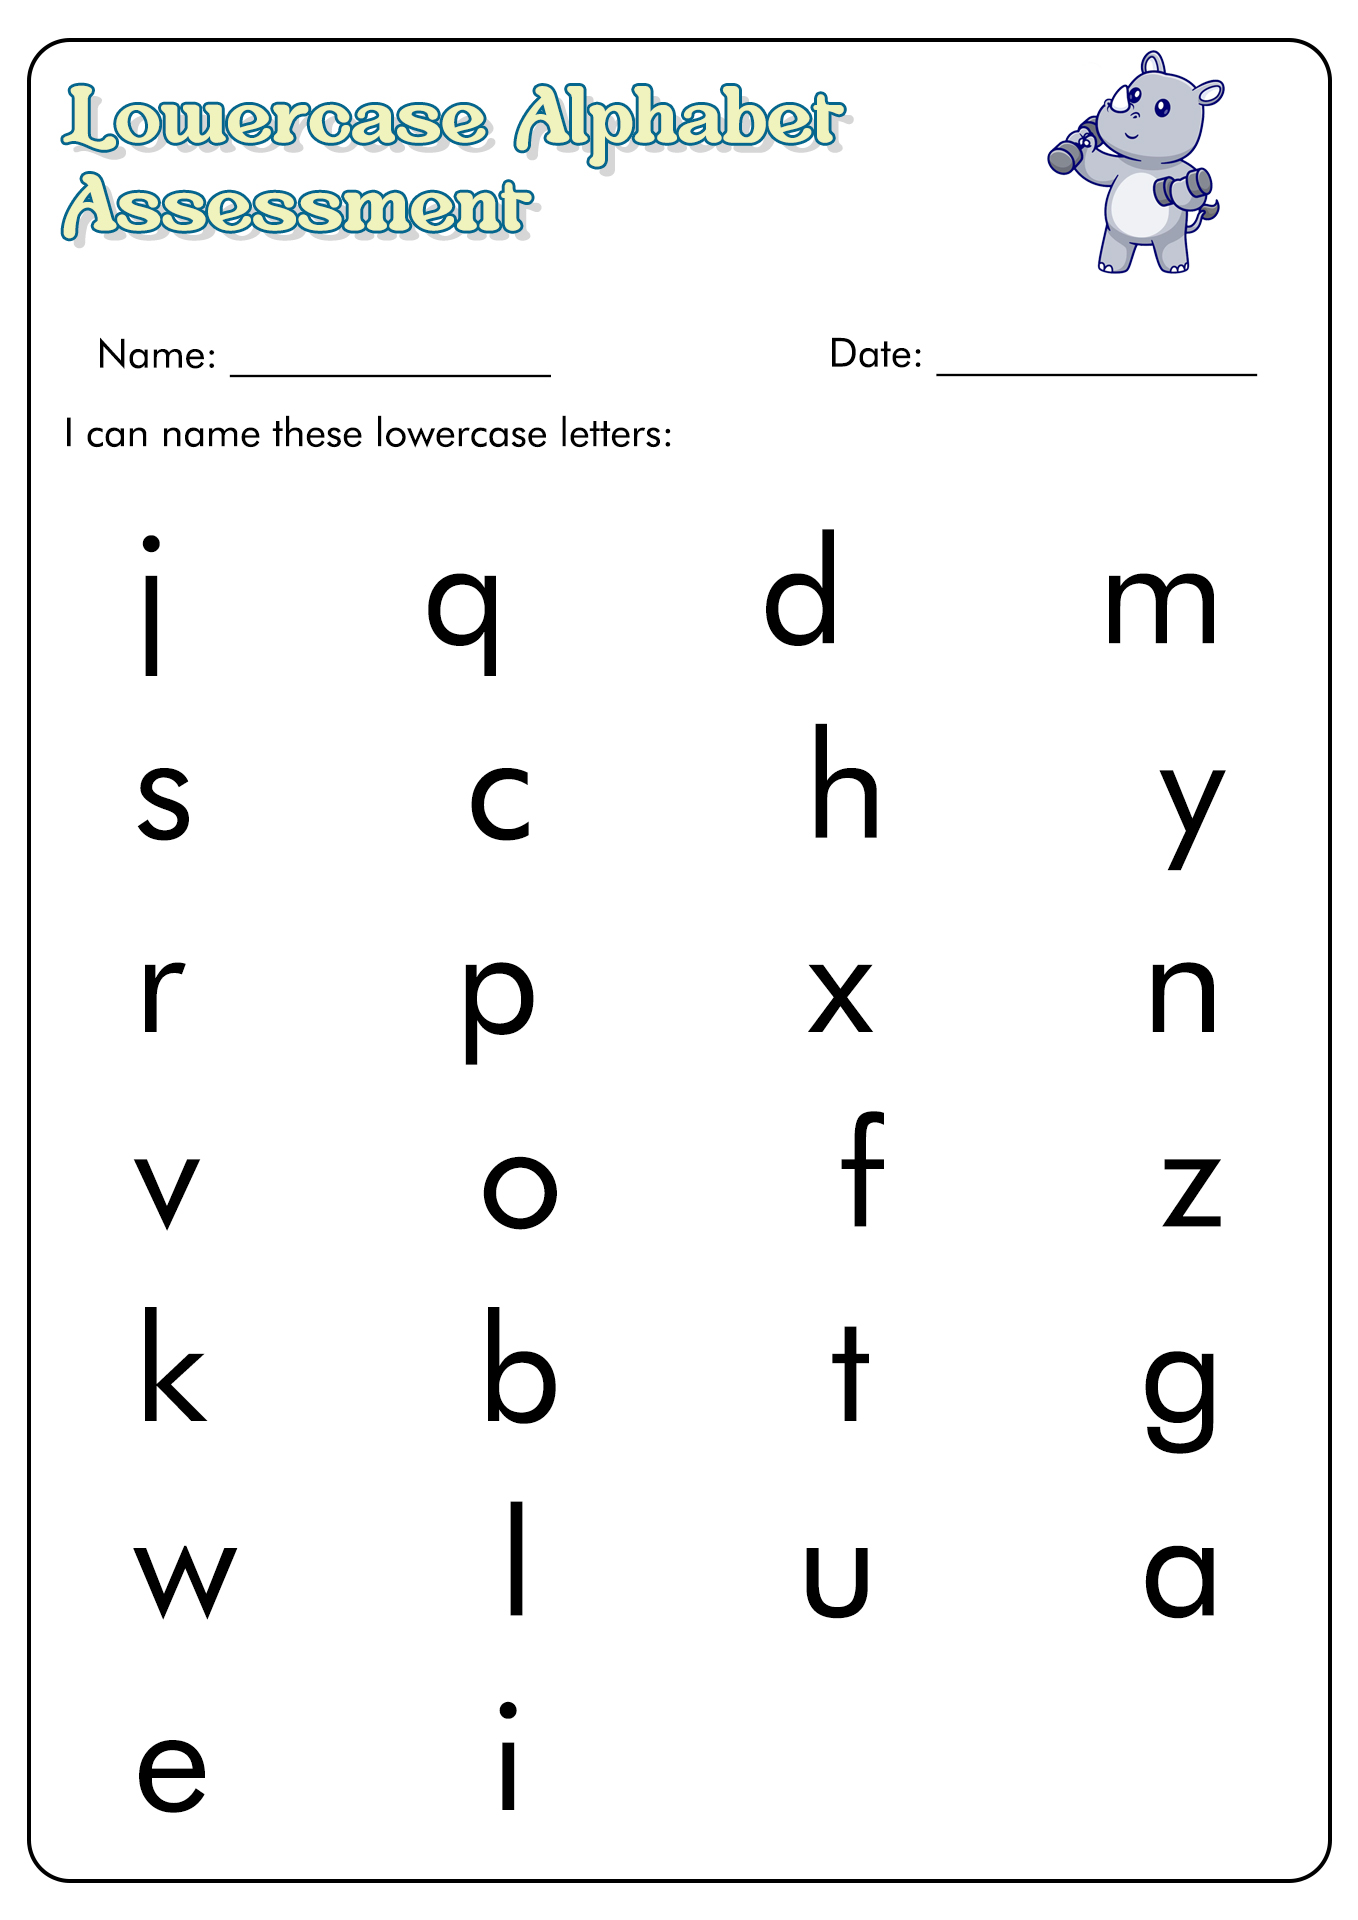 16 Best Images of Letter Recognition Assessment Worksheet - Alphabet ...